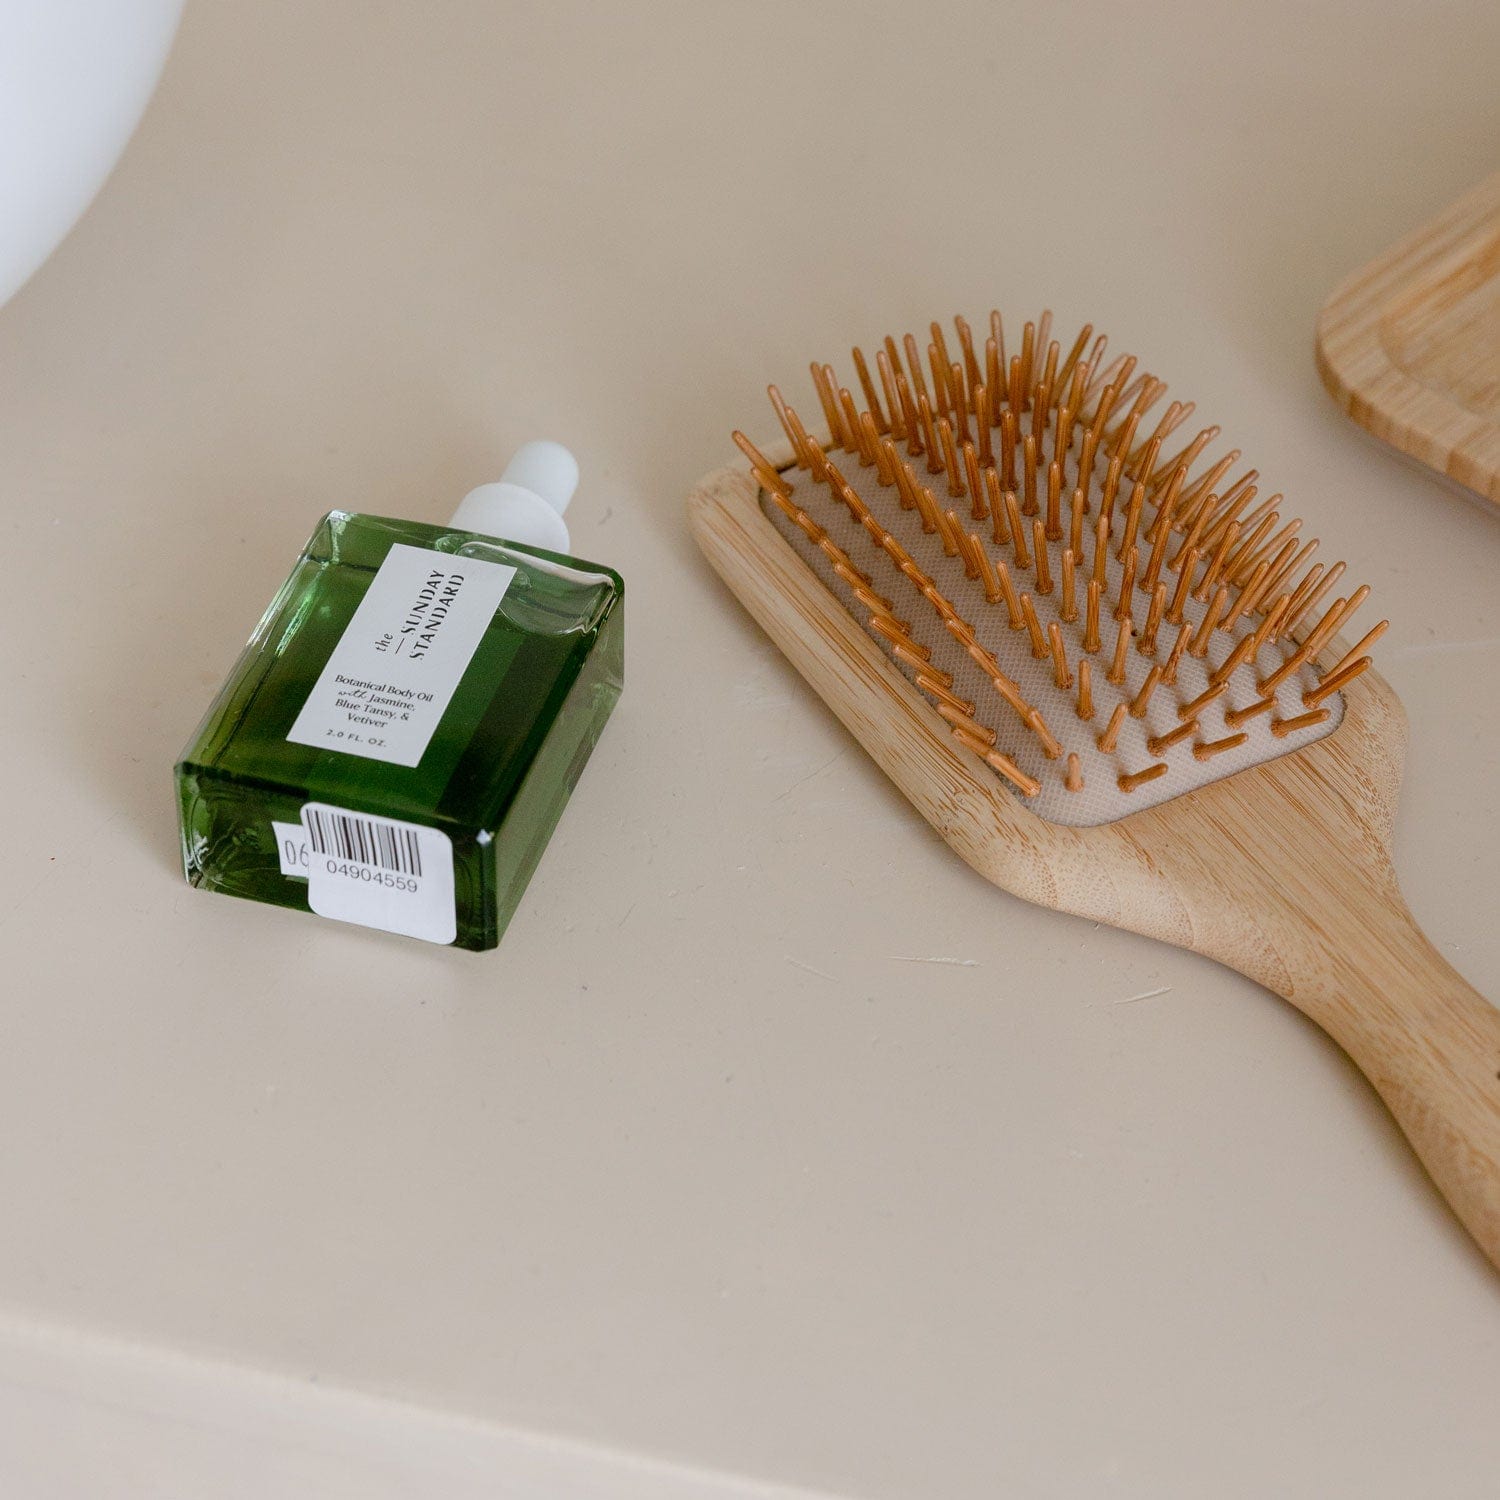 ZWS Essentials Pot Scrubber - Eco Friendly Scrub Brush - ZWS